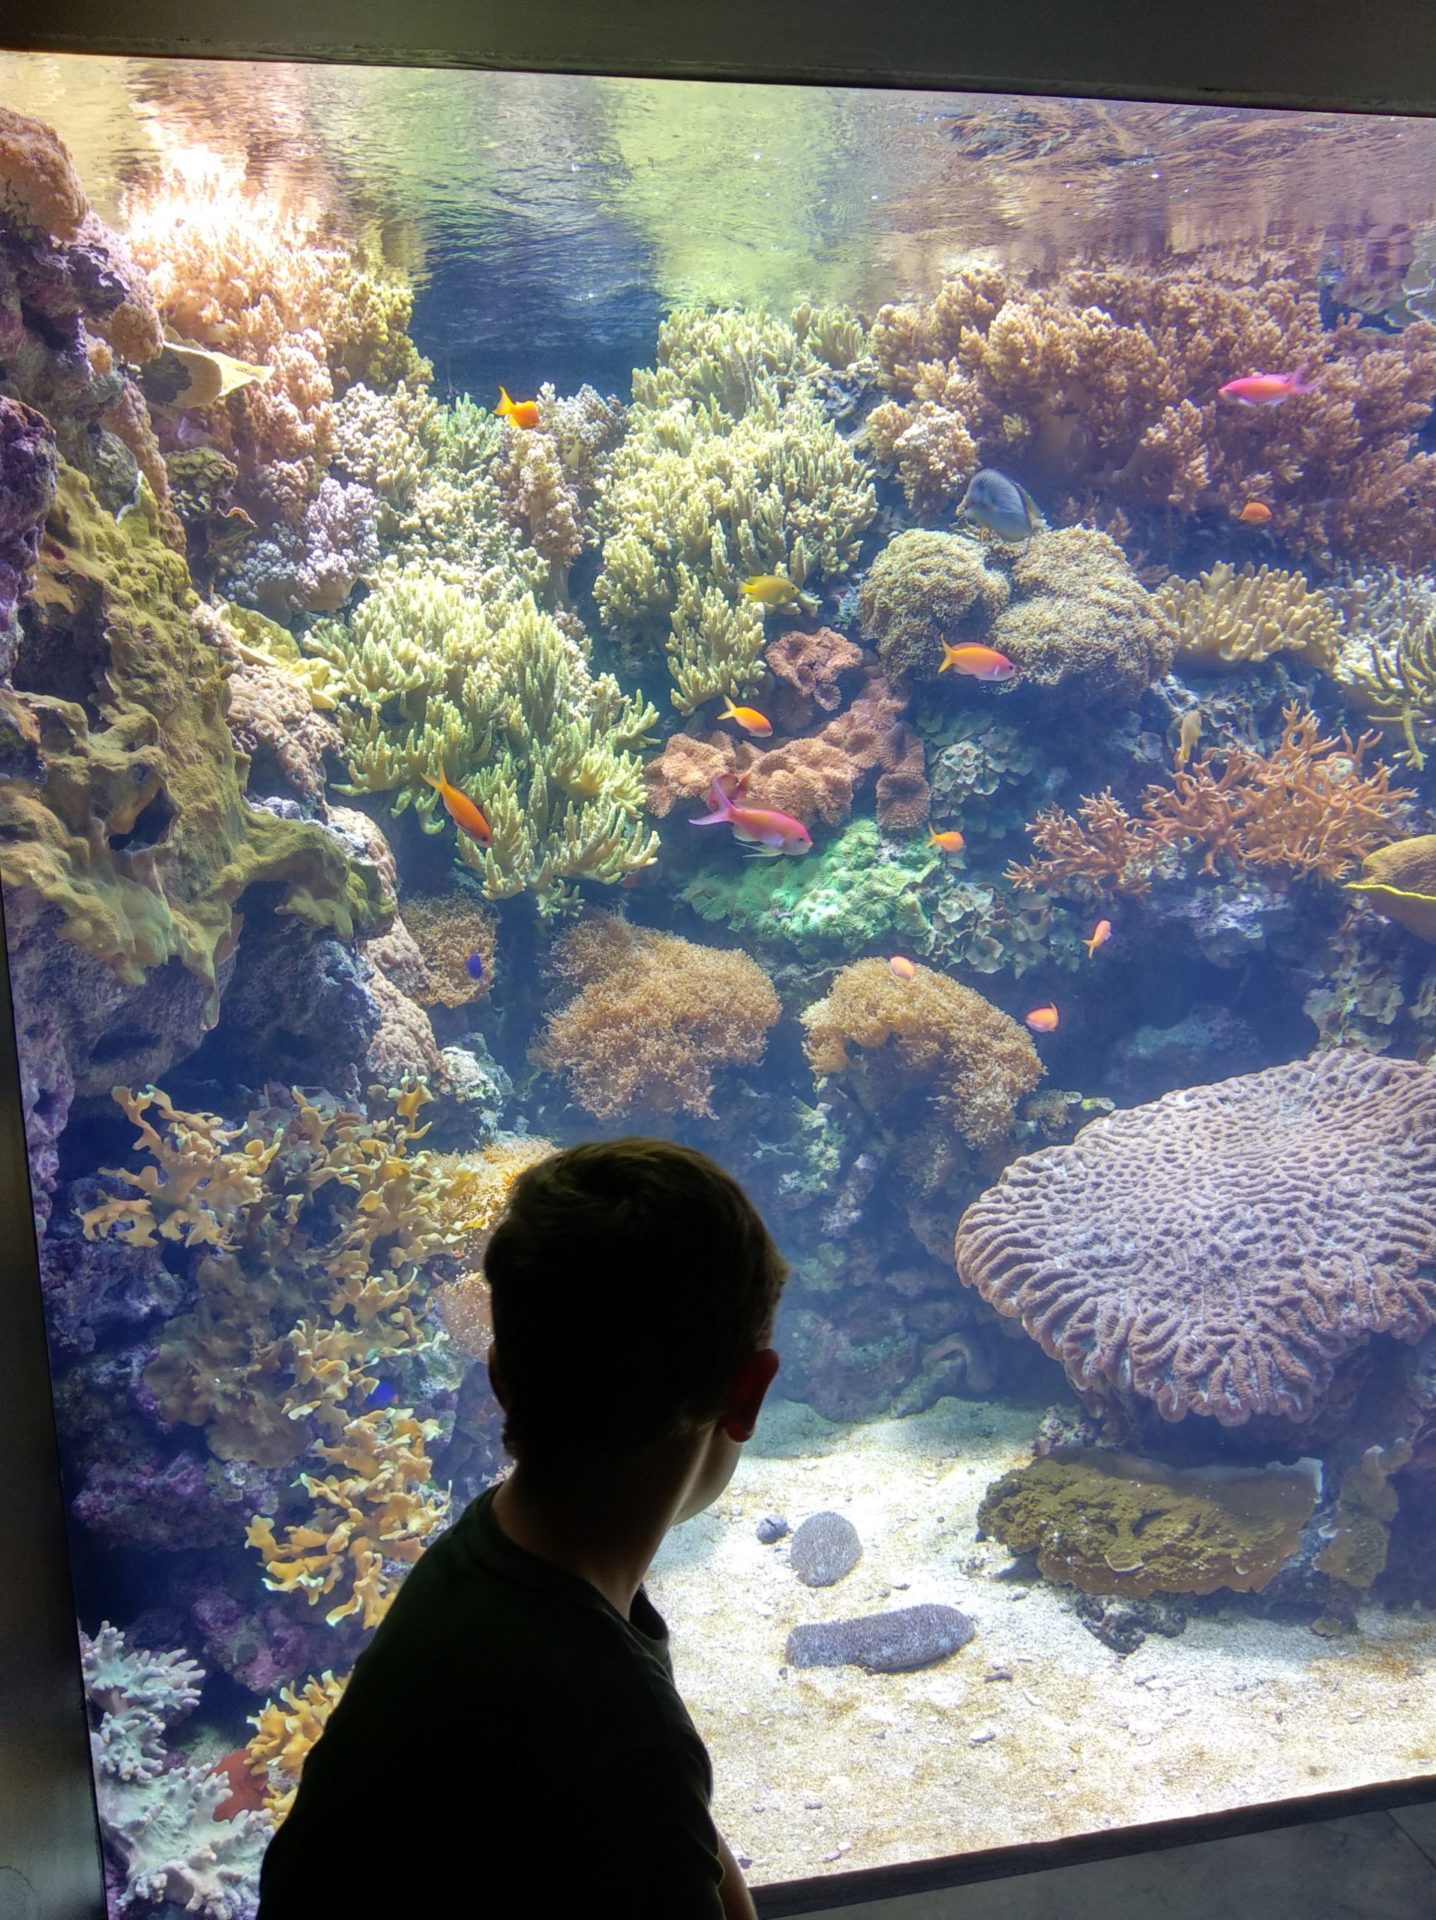 oceanario de lisboa - coral